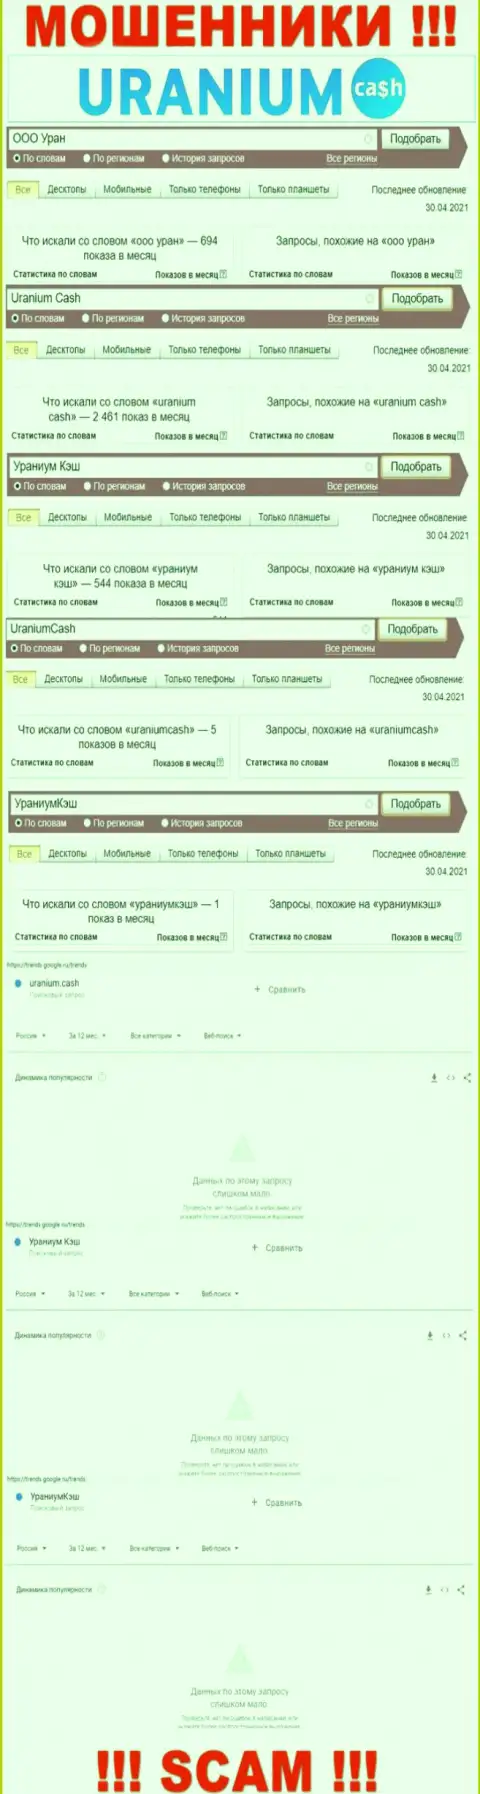 Online-запросы по бренду мошенников ООО Уран в поисковиках интернет сети